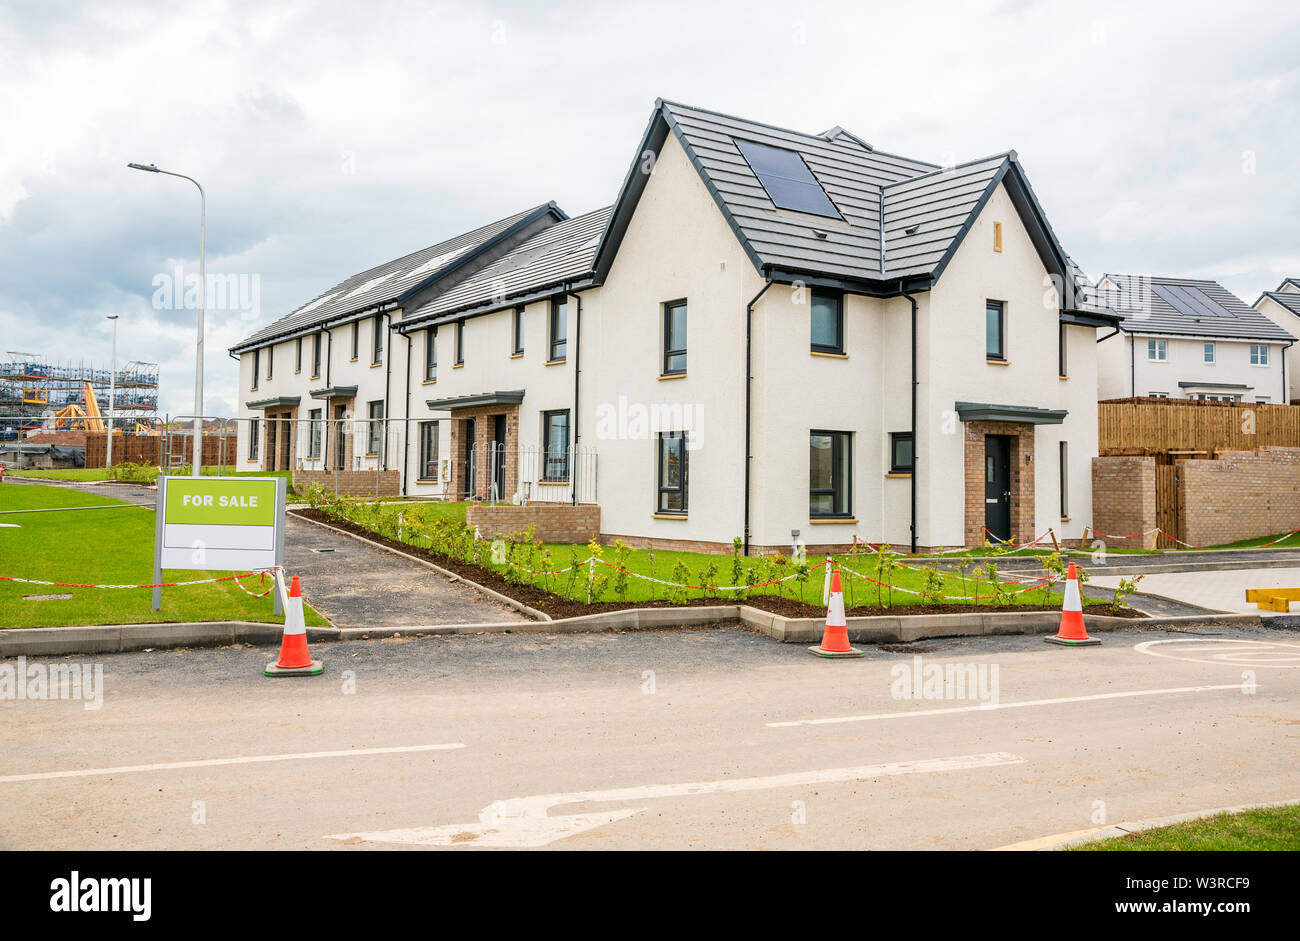 Neue Häuser für Verkauf in einer Wohnsiedlung in Schottland an einem bewölkten Sommertag. Alle Häuser haben Solarzellen auf dem Dach. Stockfoto